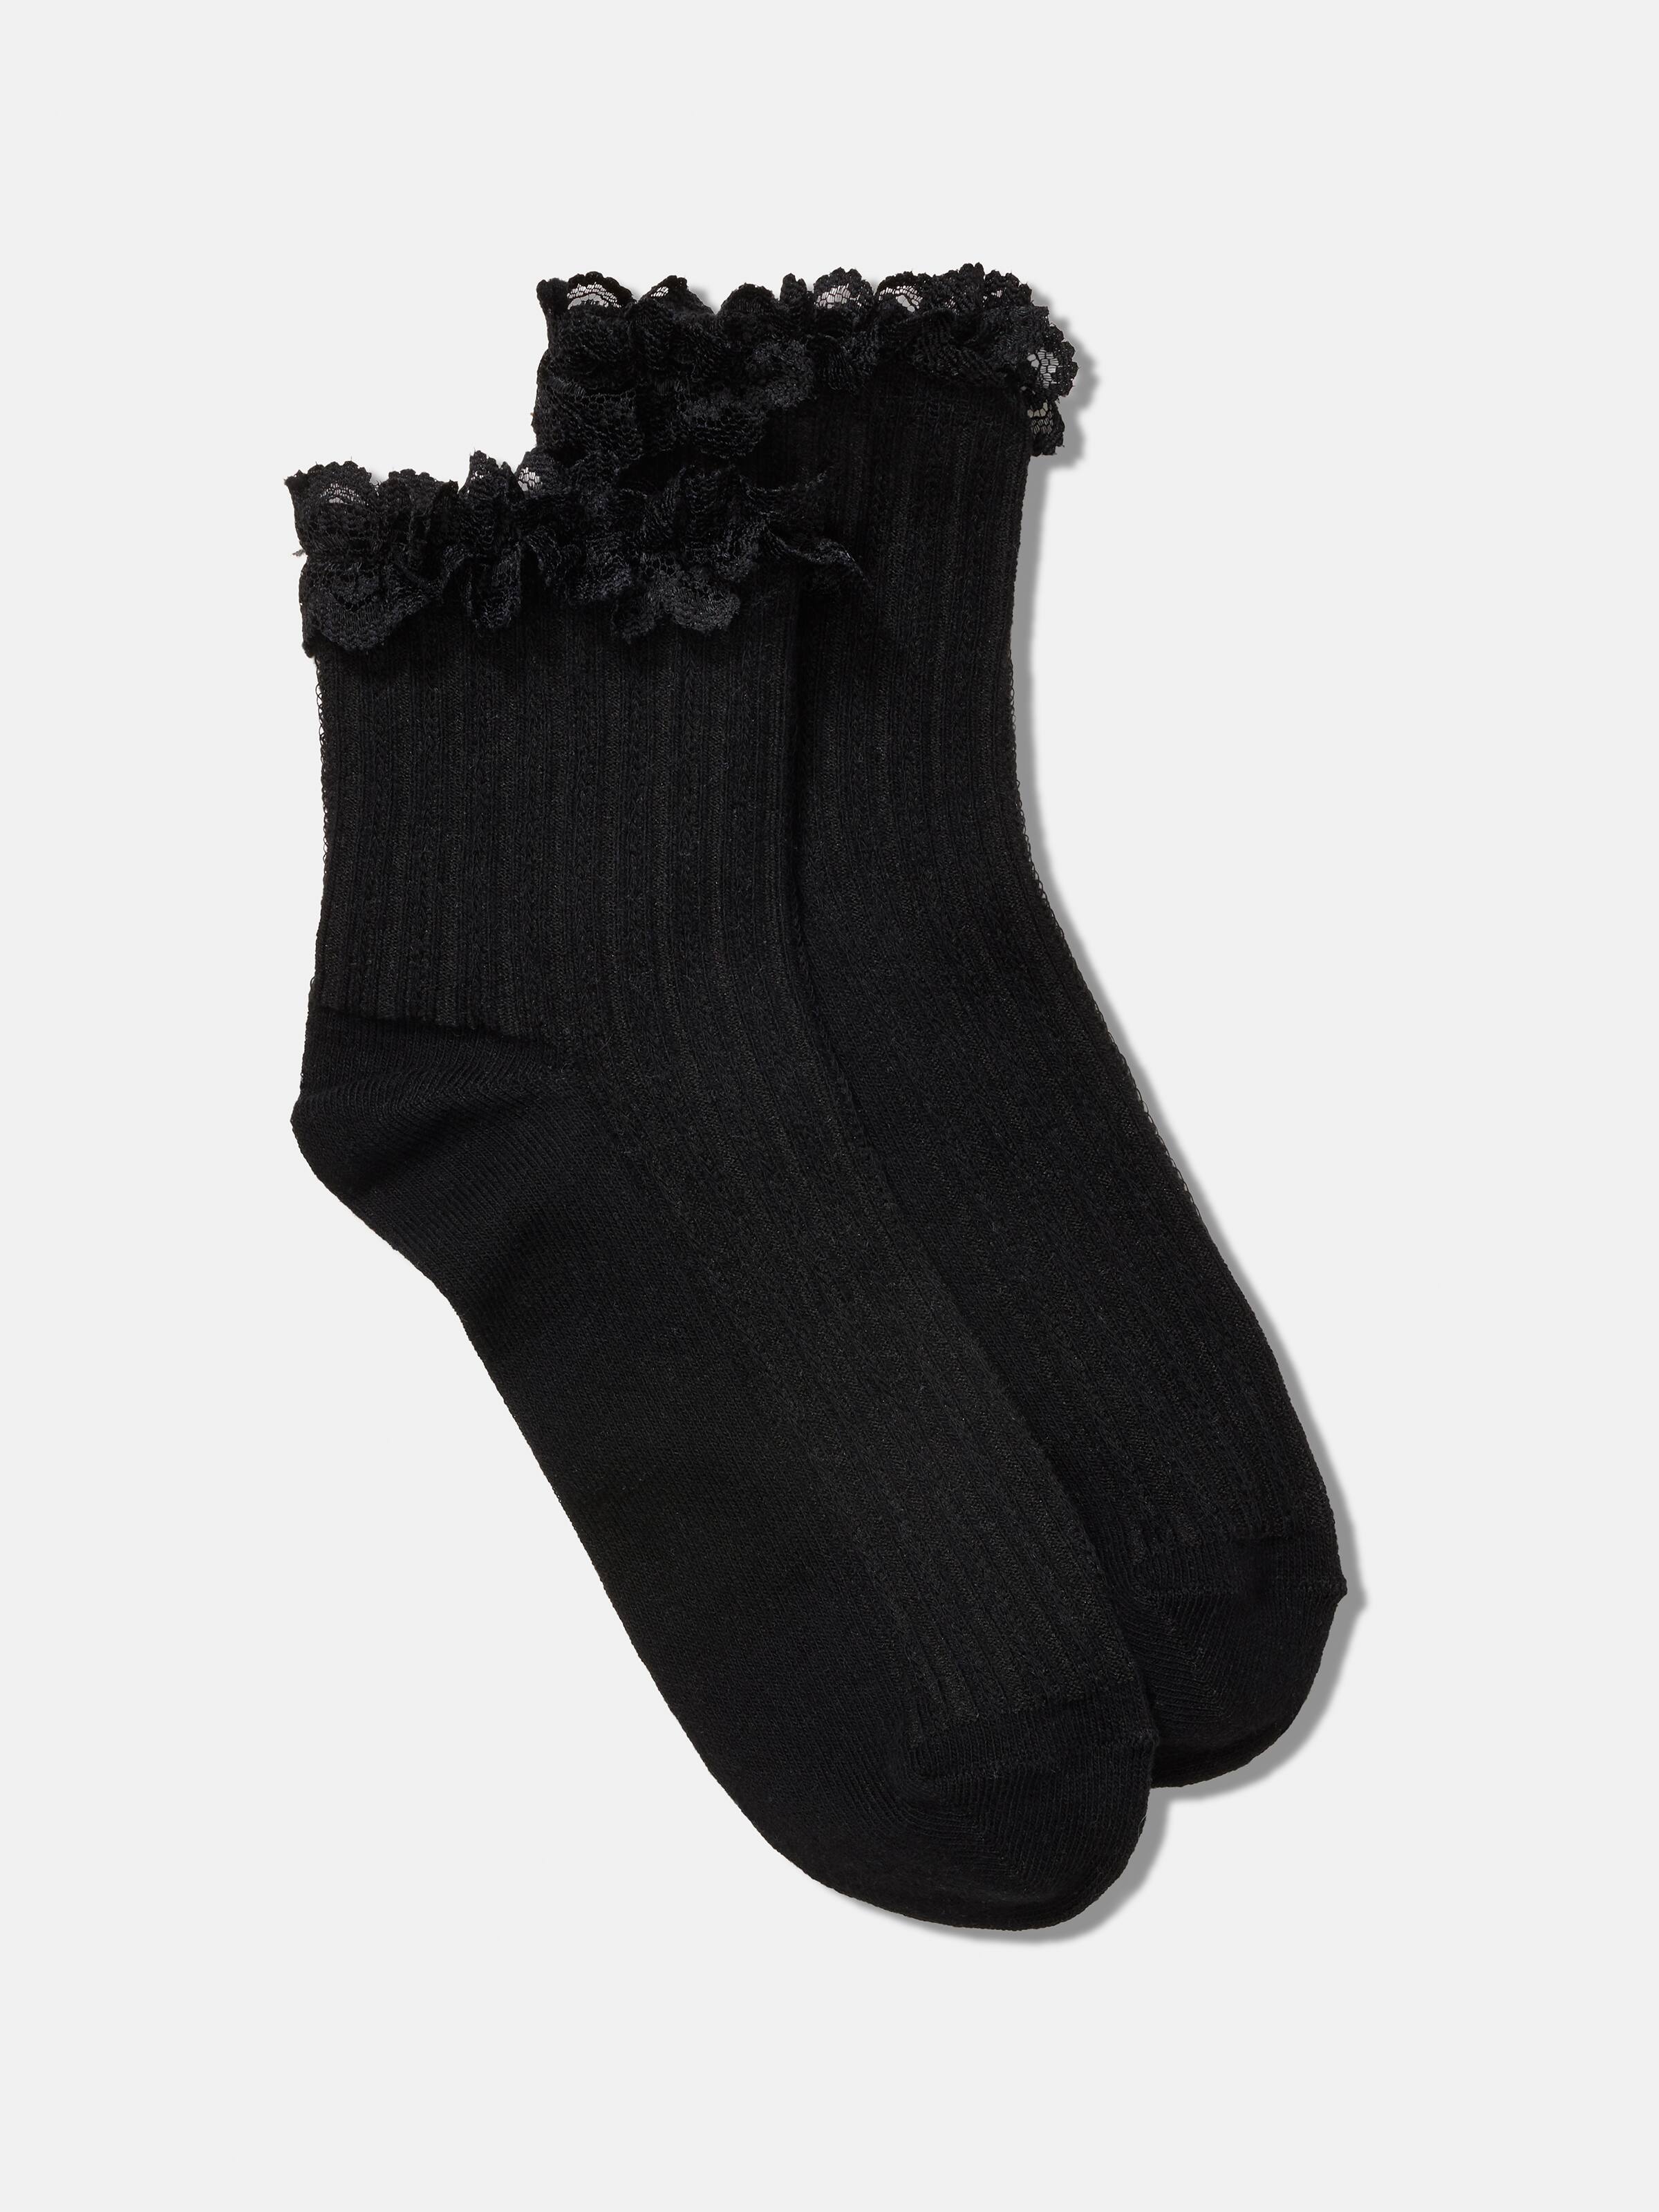 Shop Women's Ankle, Fluffy, Casual & Cute Socks